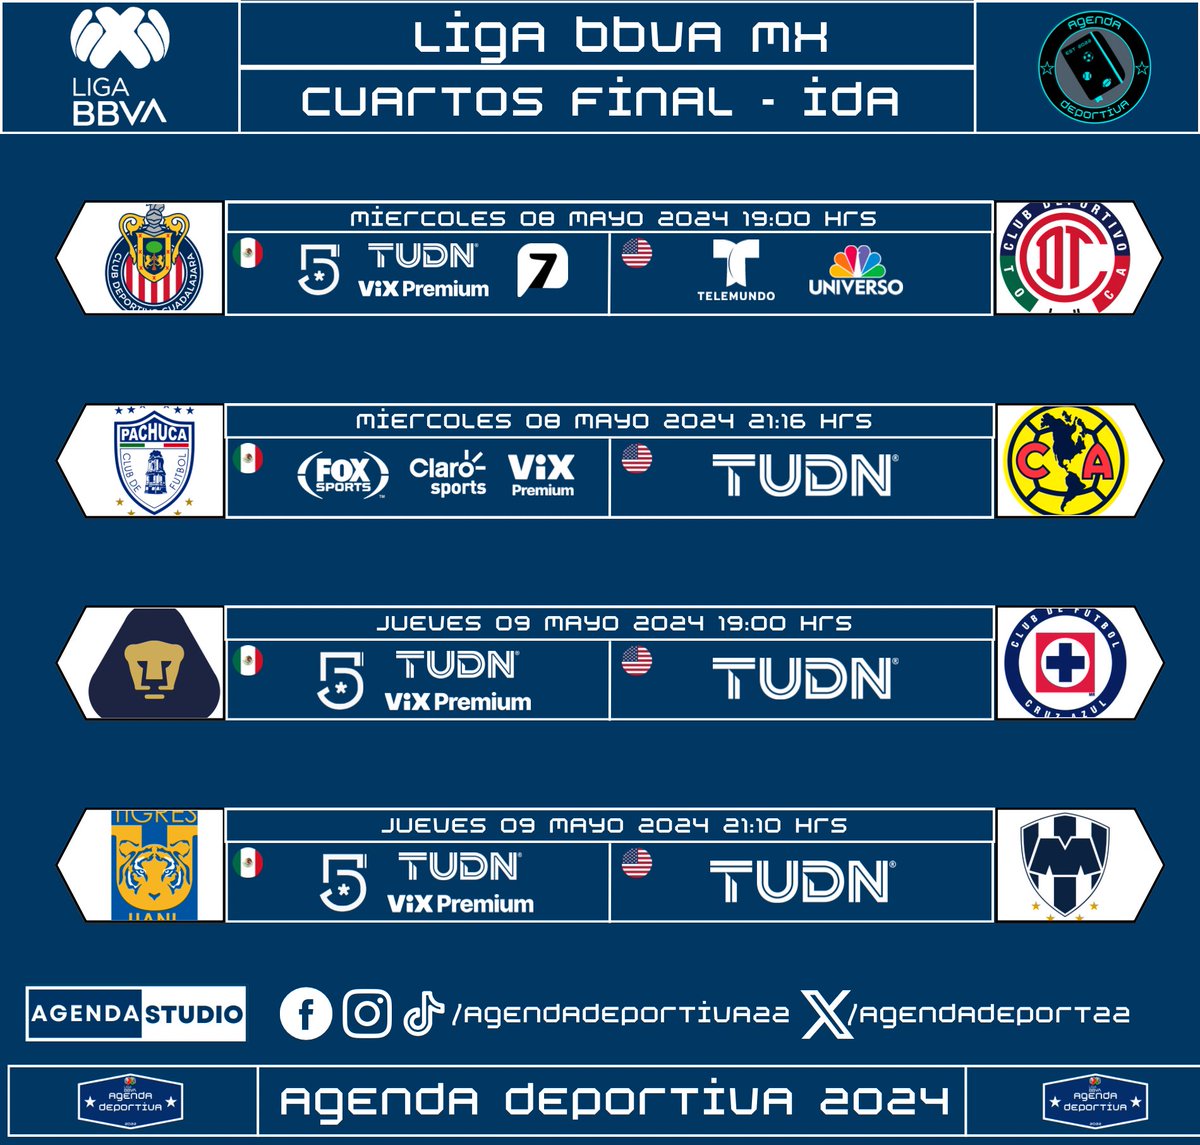 Liga BBVA Mx
Cuartos de Final - Ida
Transmisión: México y USA
⚠️Programación Sujeta a Cambios⚠️
#LigaBBVAMX 
#Liguilla
#AgendaDeportiva